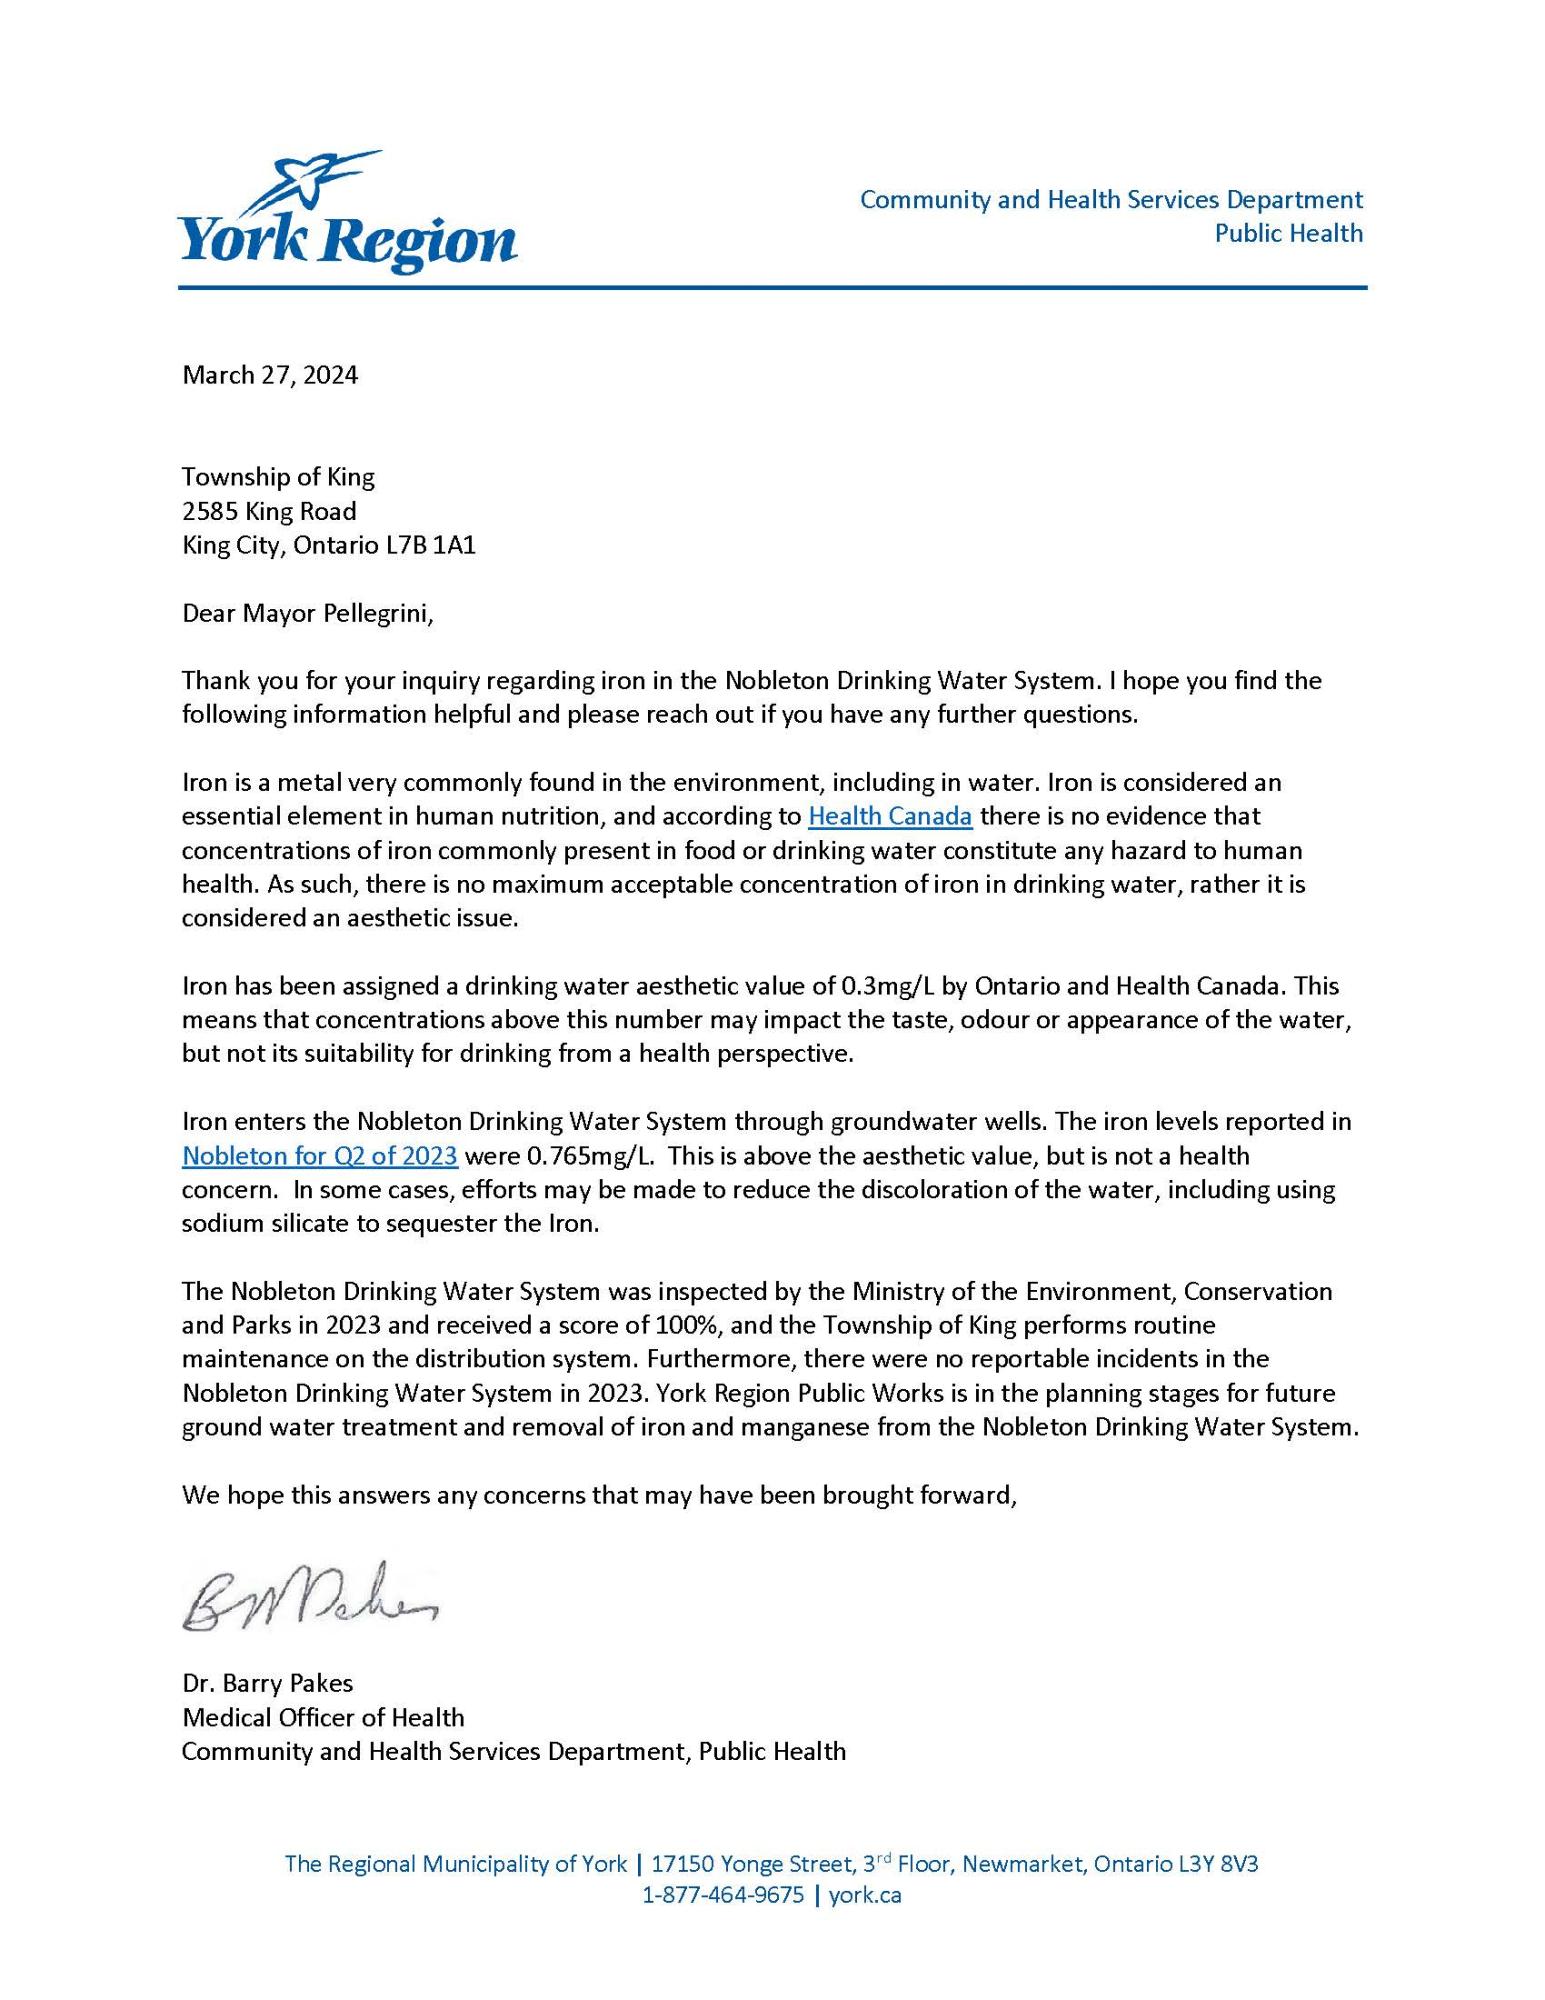 Letter from York Region